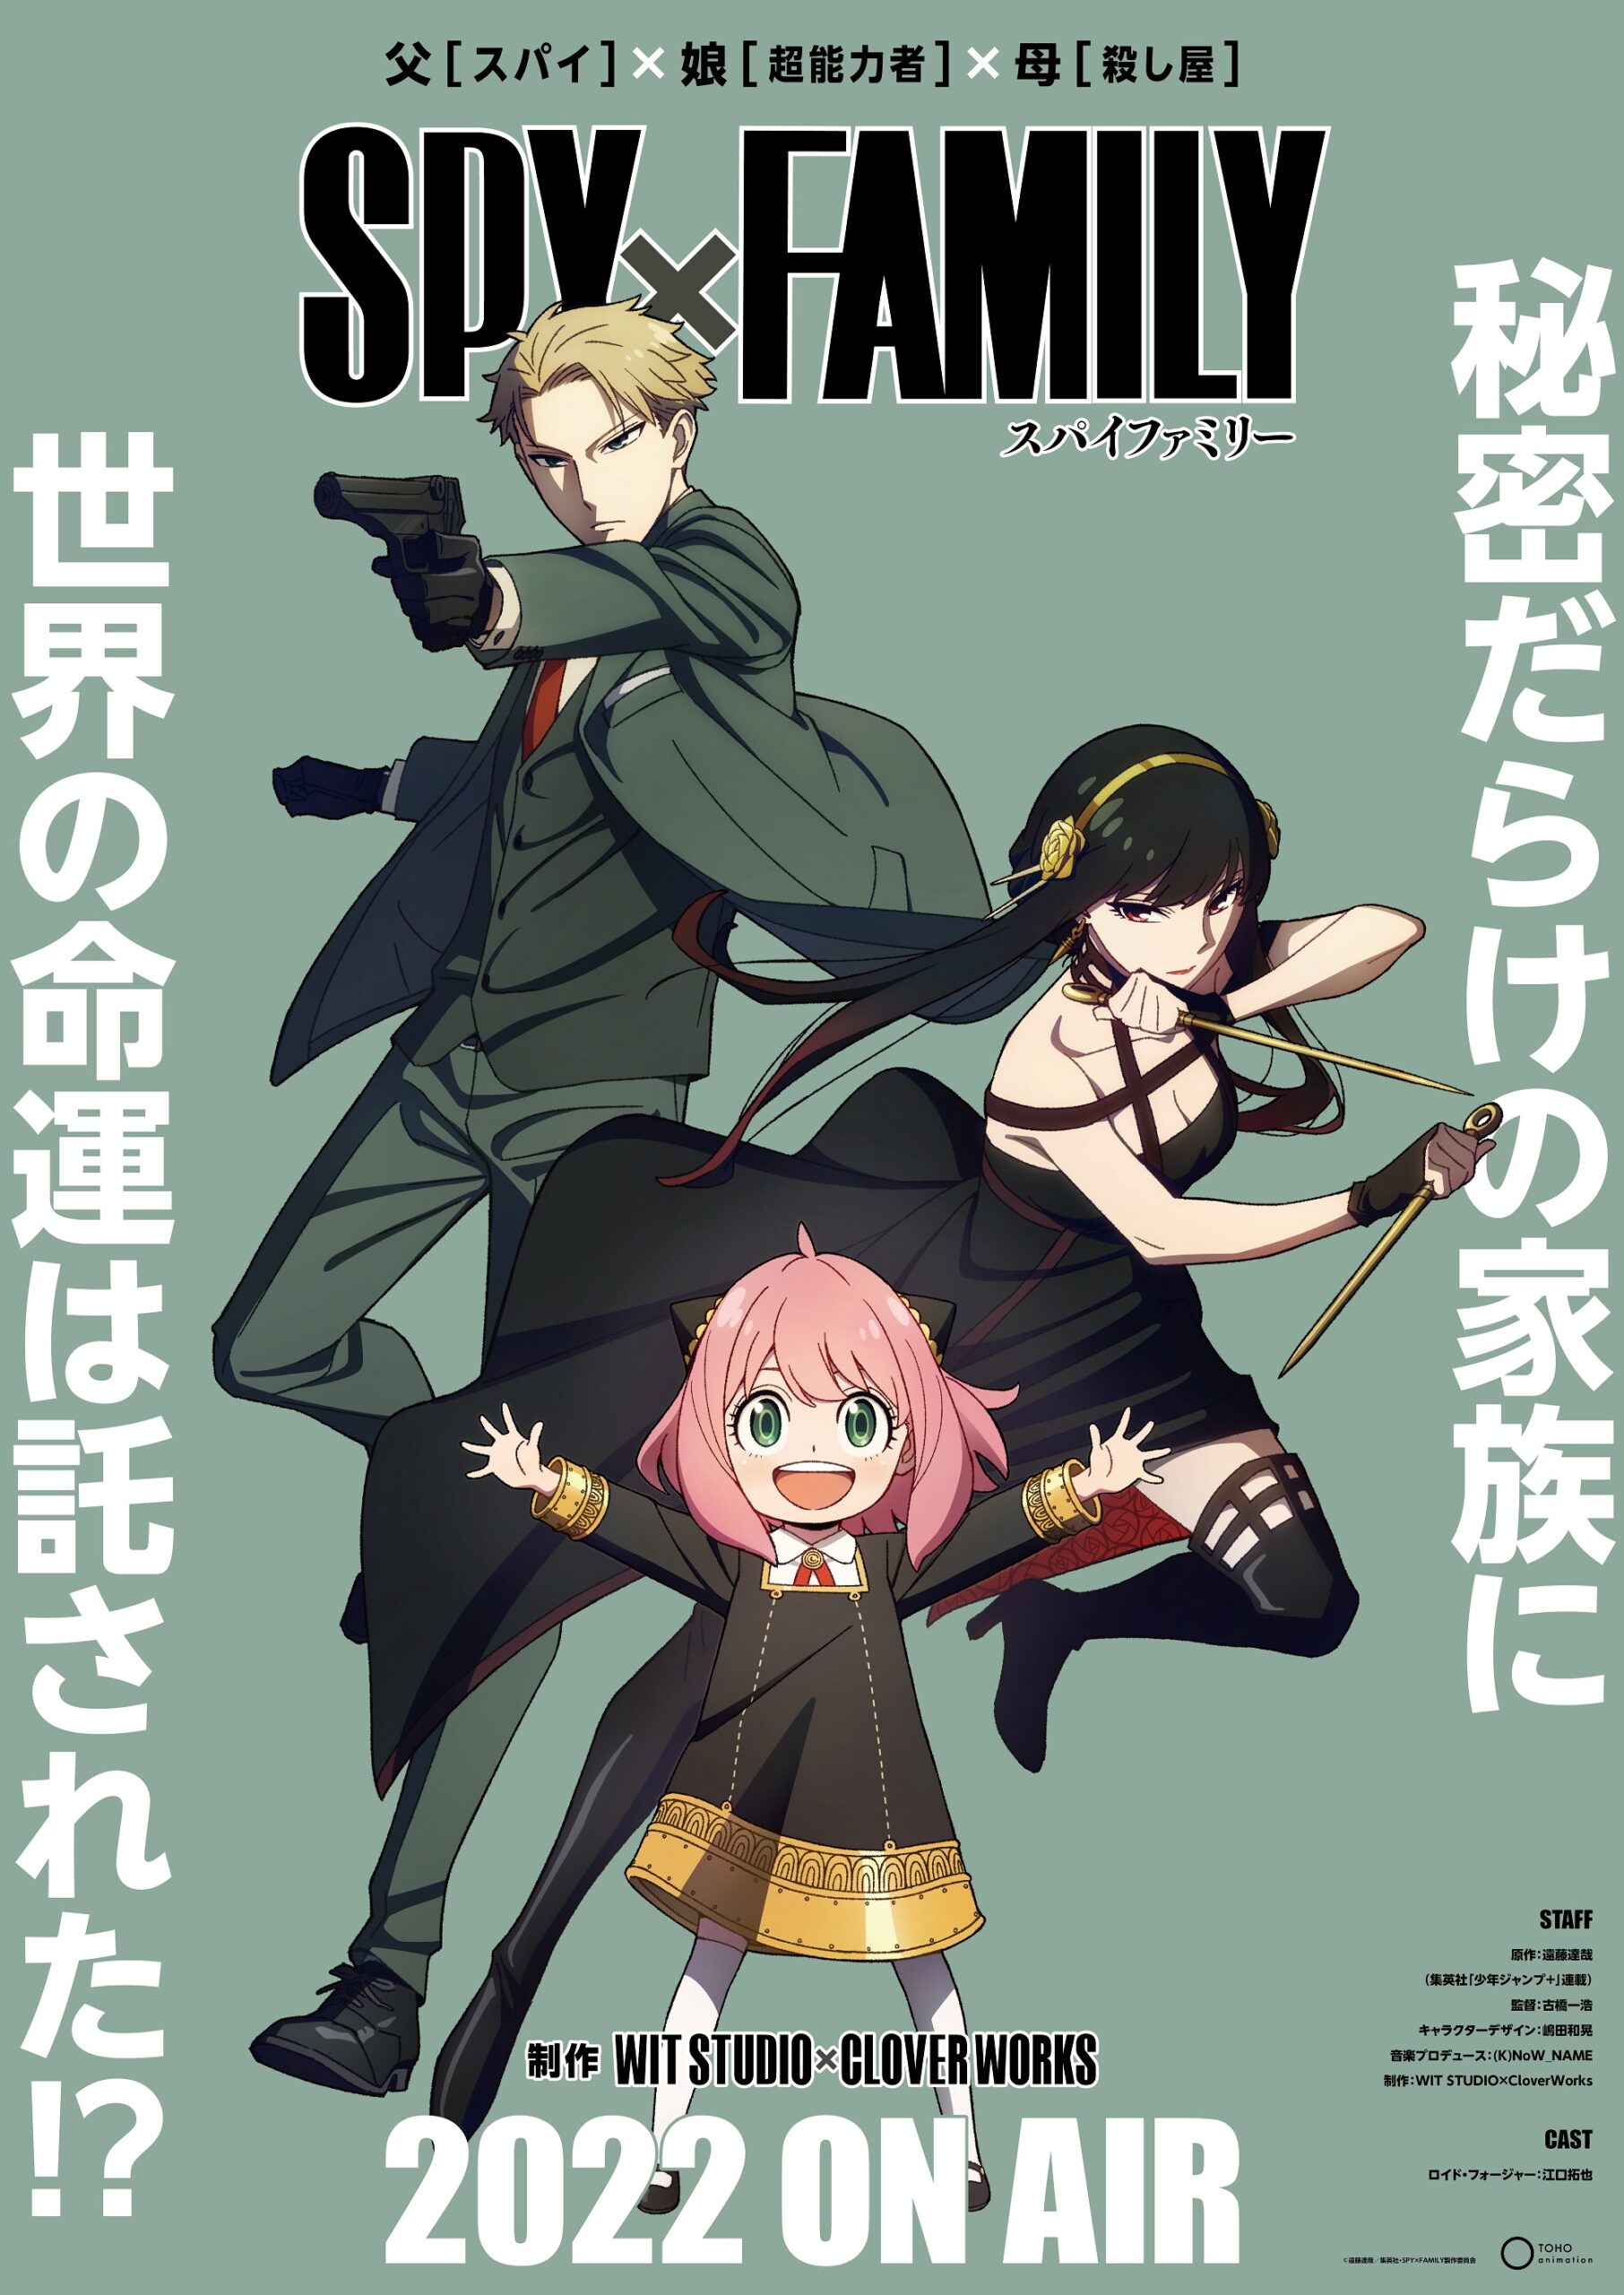  spy x family key visual spring 